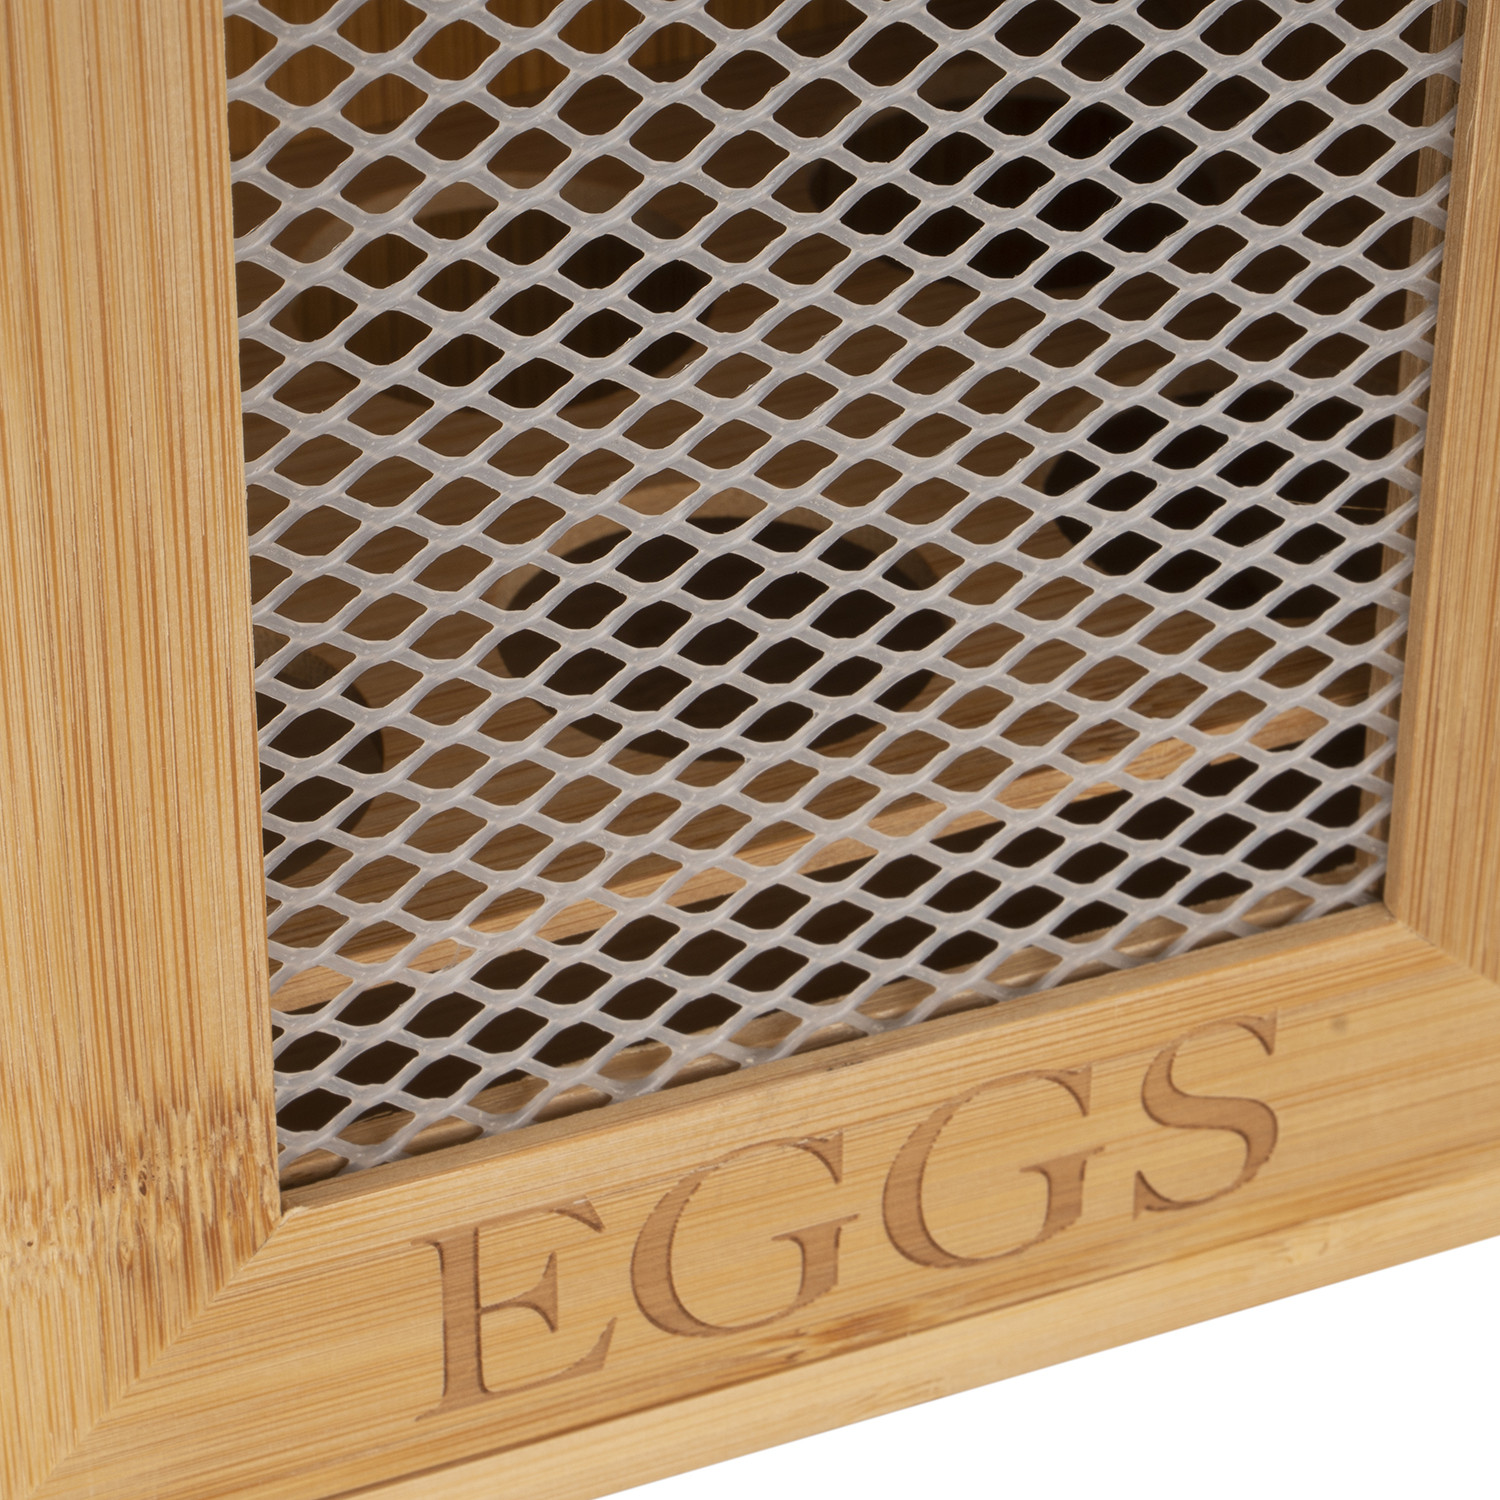 Bamboo Slogan Egg Storage House Image 5